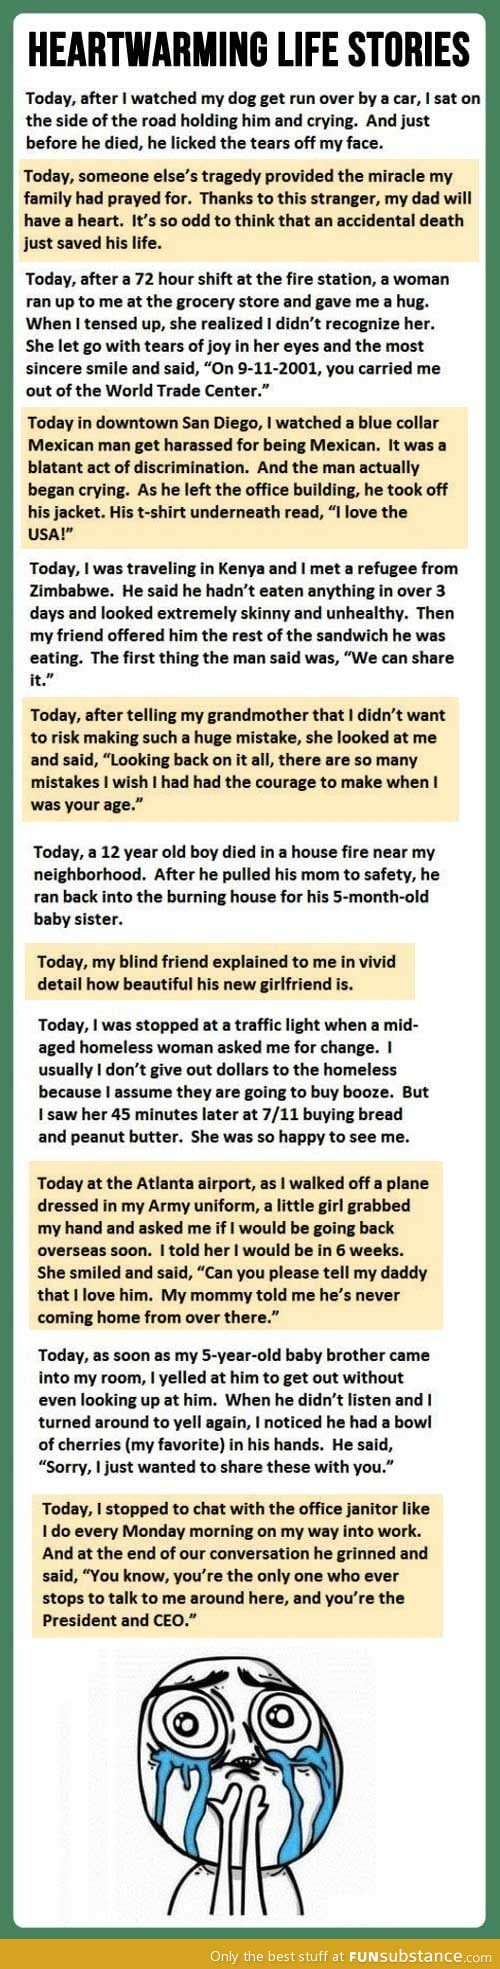 Beautiful heartwarming stories